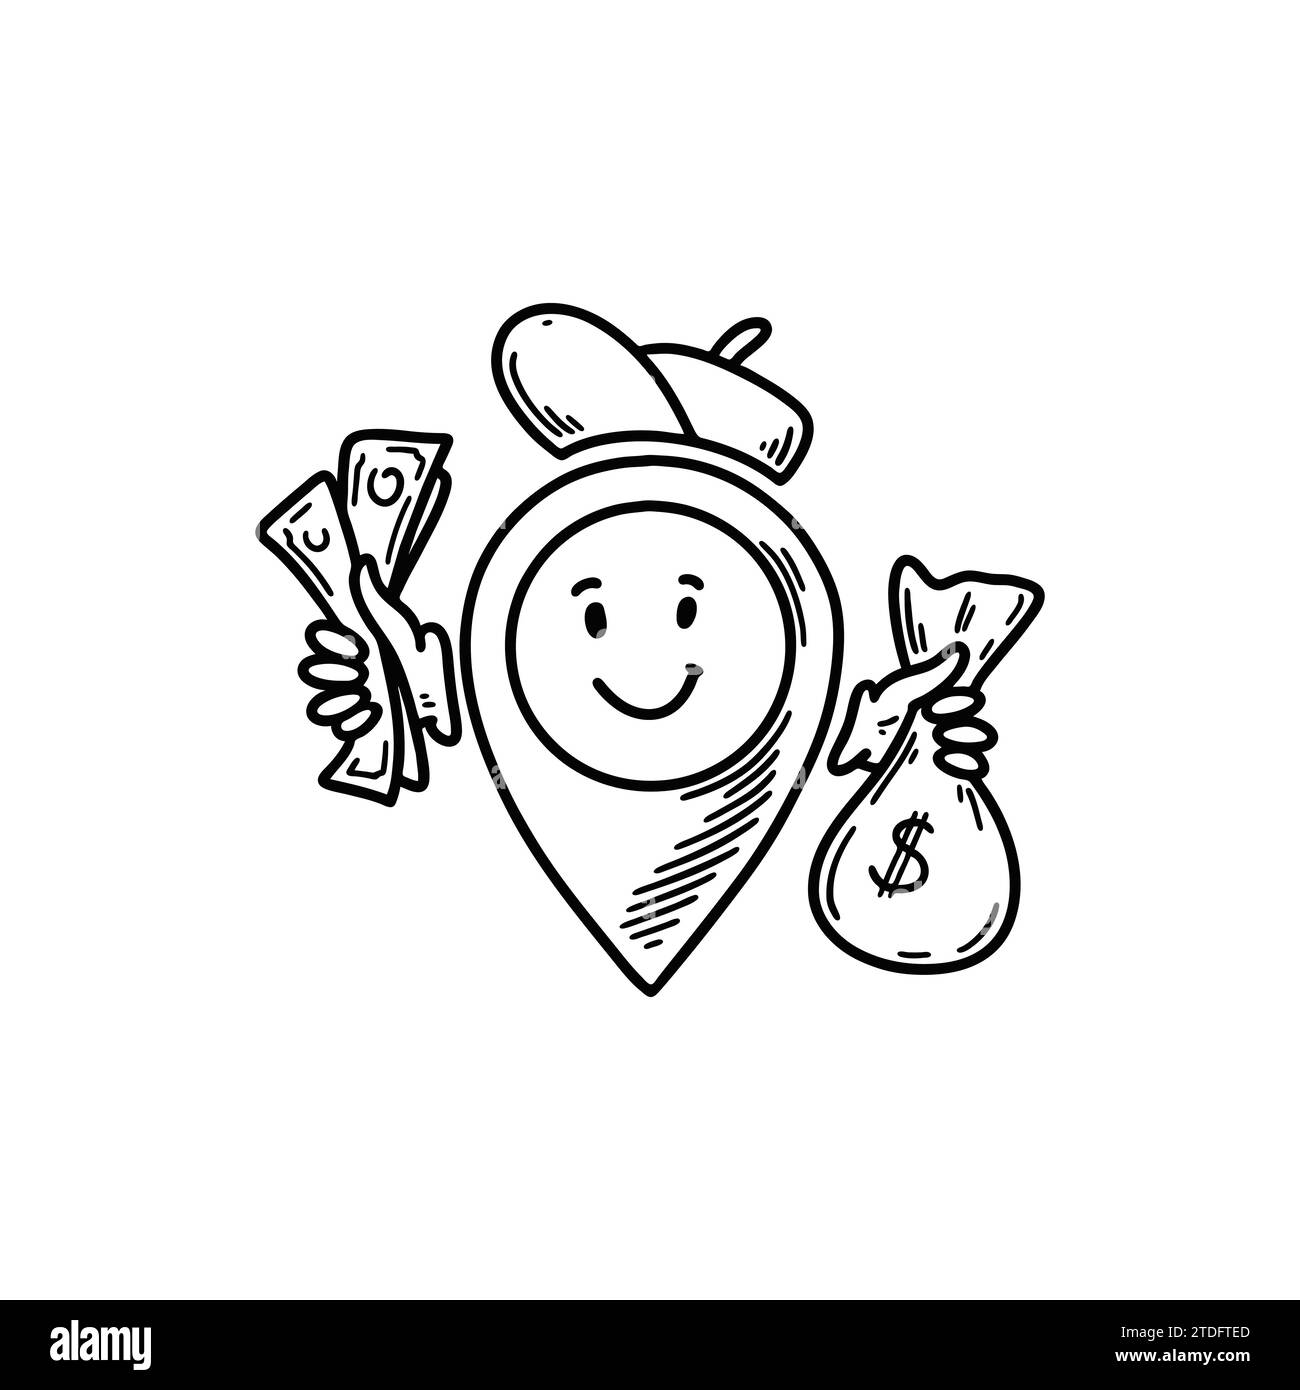 Niedliche Linie Doodle Bank Position Pin Emoji. Freihandskizze Pinpoint. Kartenadresse Comic Emoticon. Lächelnder lustiger Charakter Stock Vektor